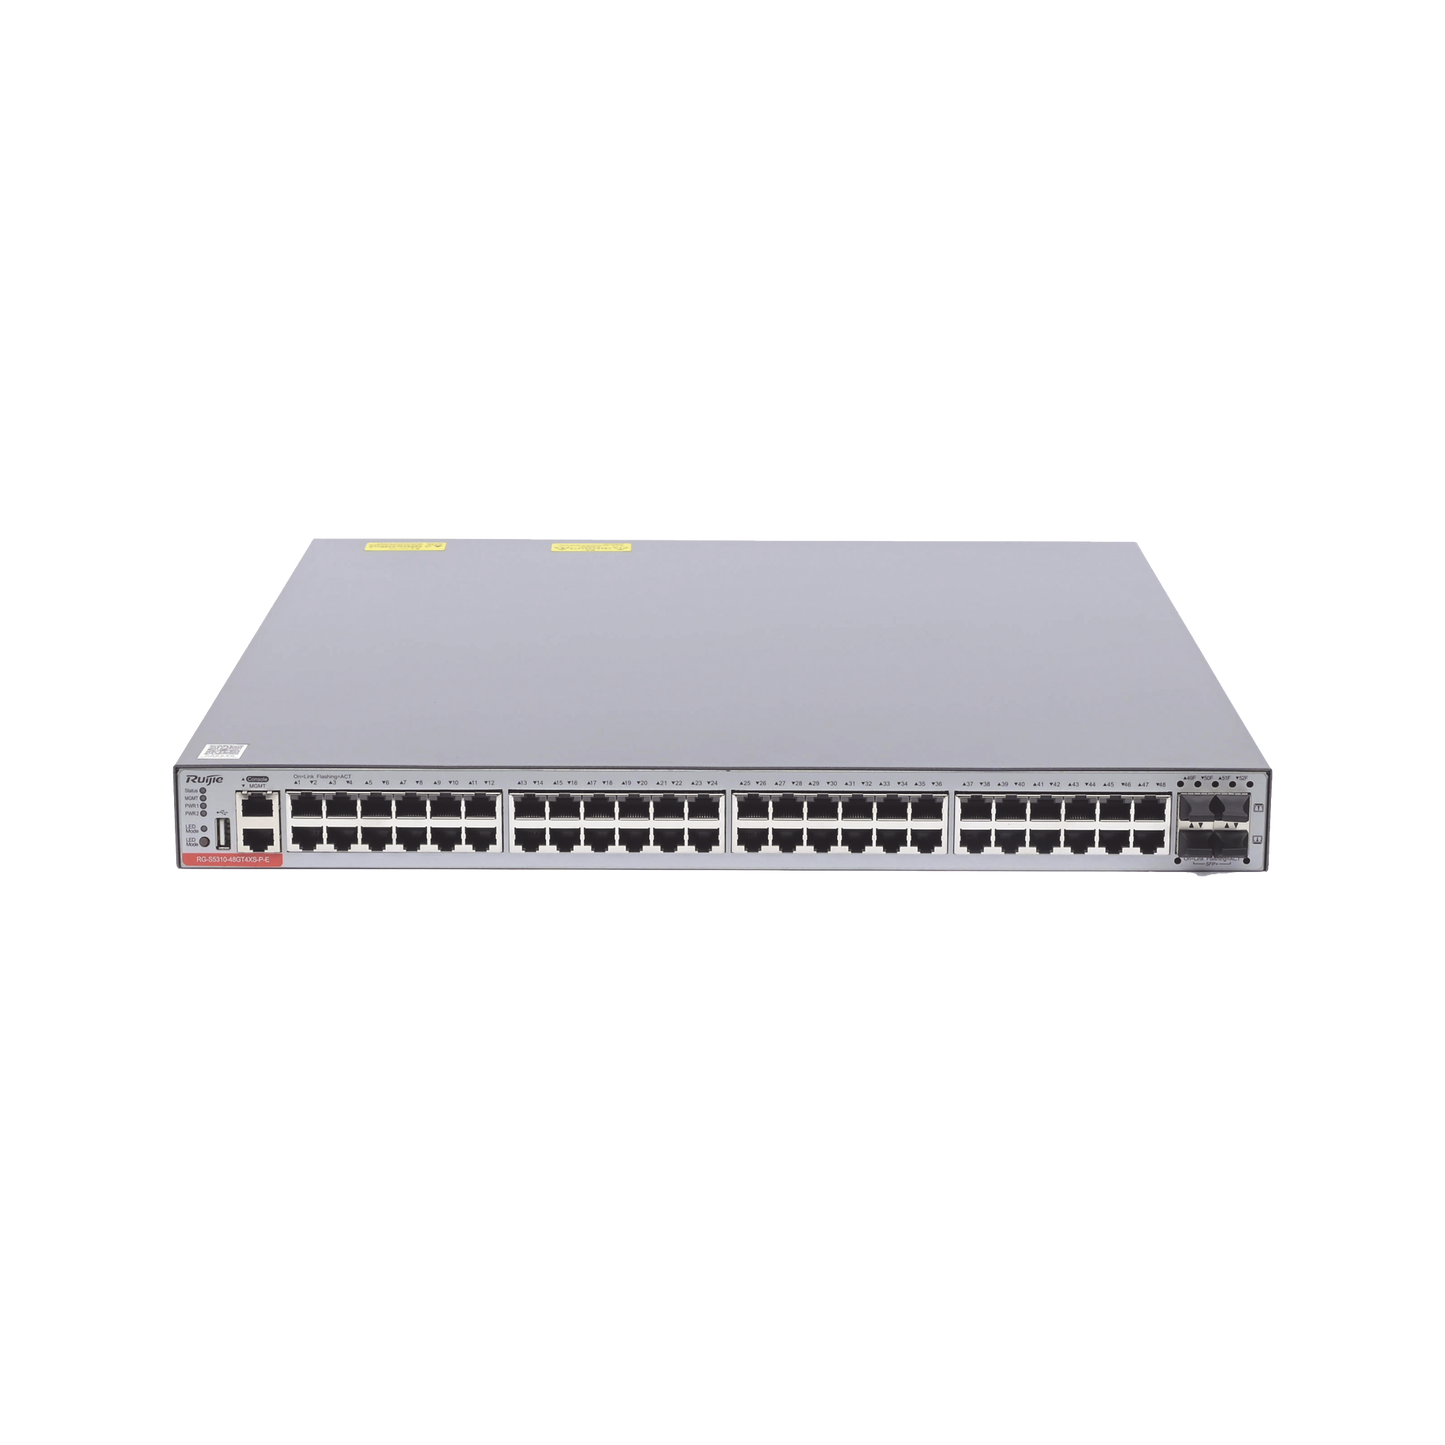 Switch Administrable Capa 3 PoE con 48 puertos Gigabit 802.3af/at + 4 SFP+ para fibra 10Gb, hasta 1,480 watts, gestión gratuita desde la nube.